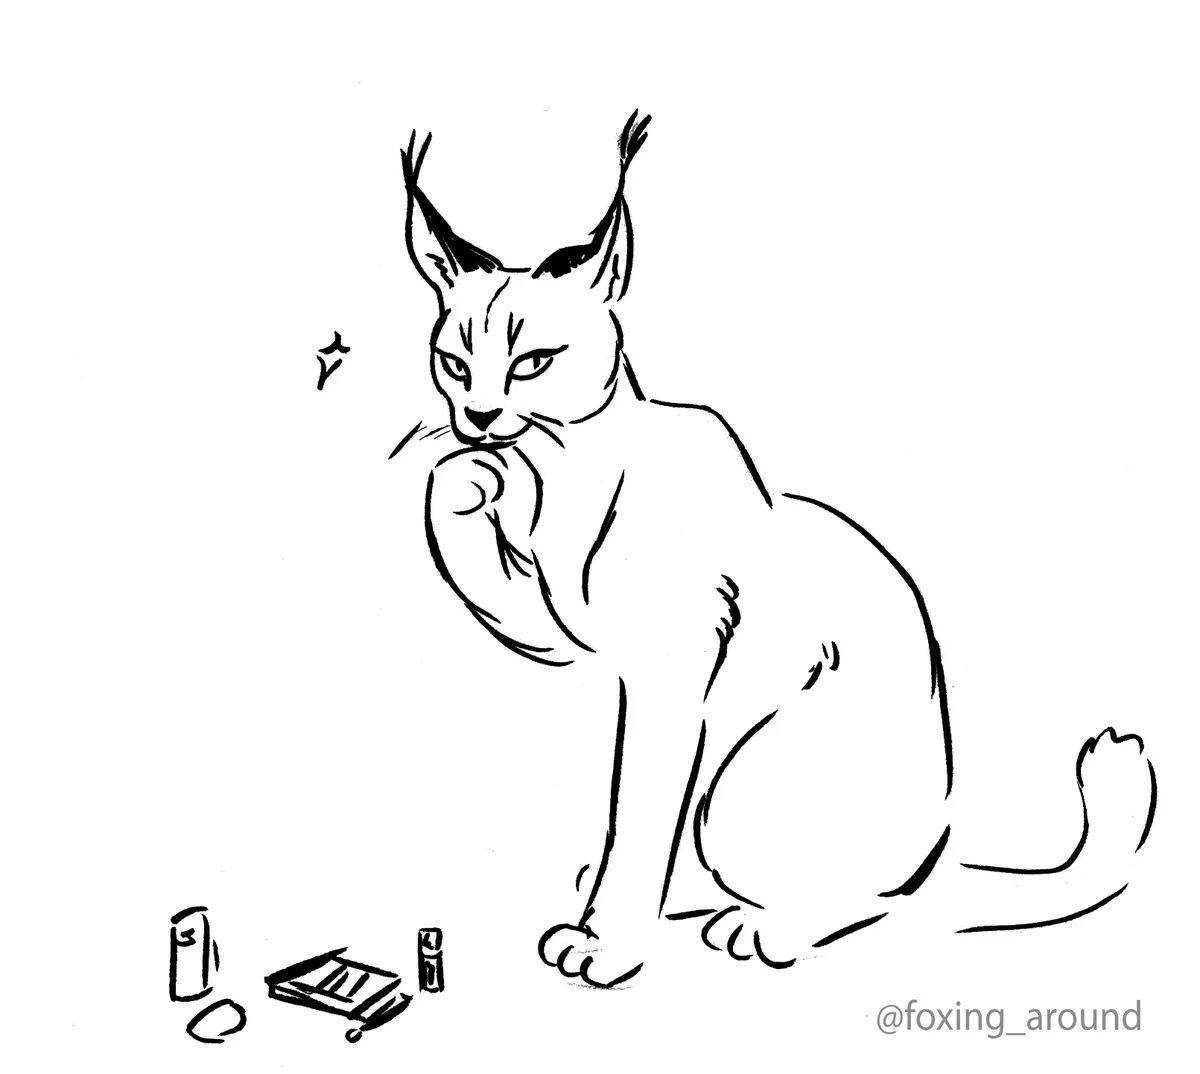 Animated spanking cat